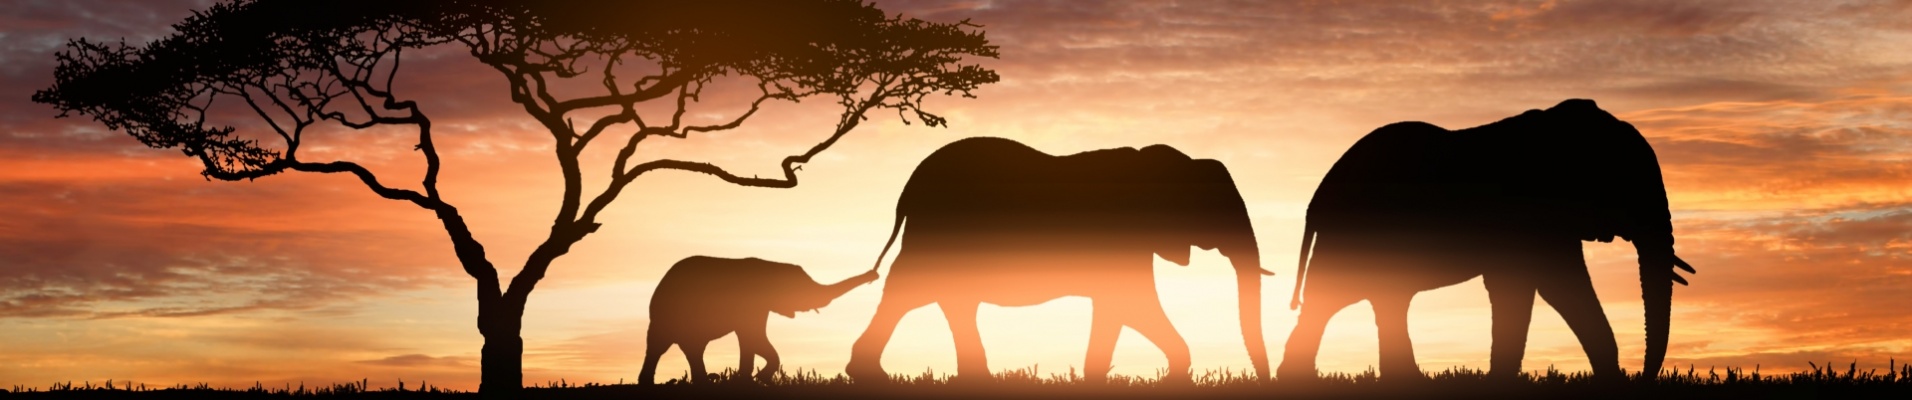 pysage-savane-safari-famille-elephants-reflet-lac-coucher-du-soleil